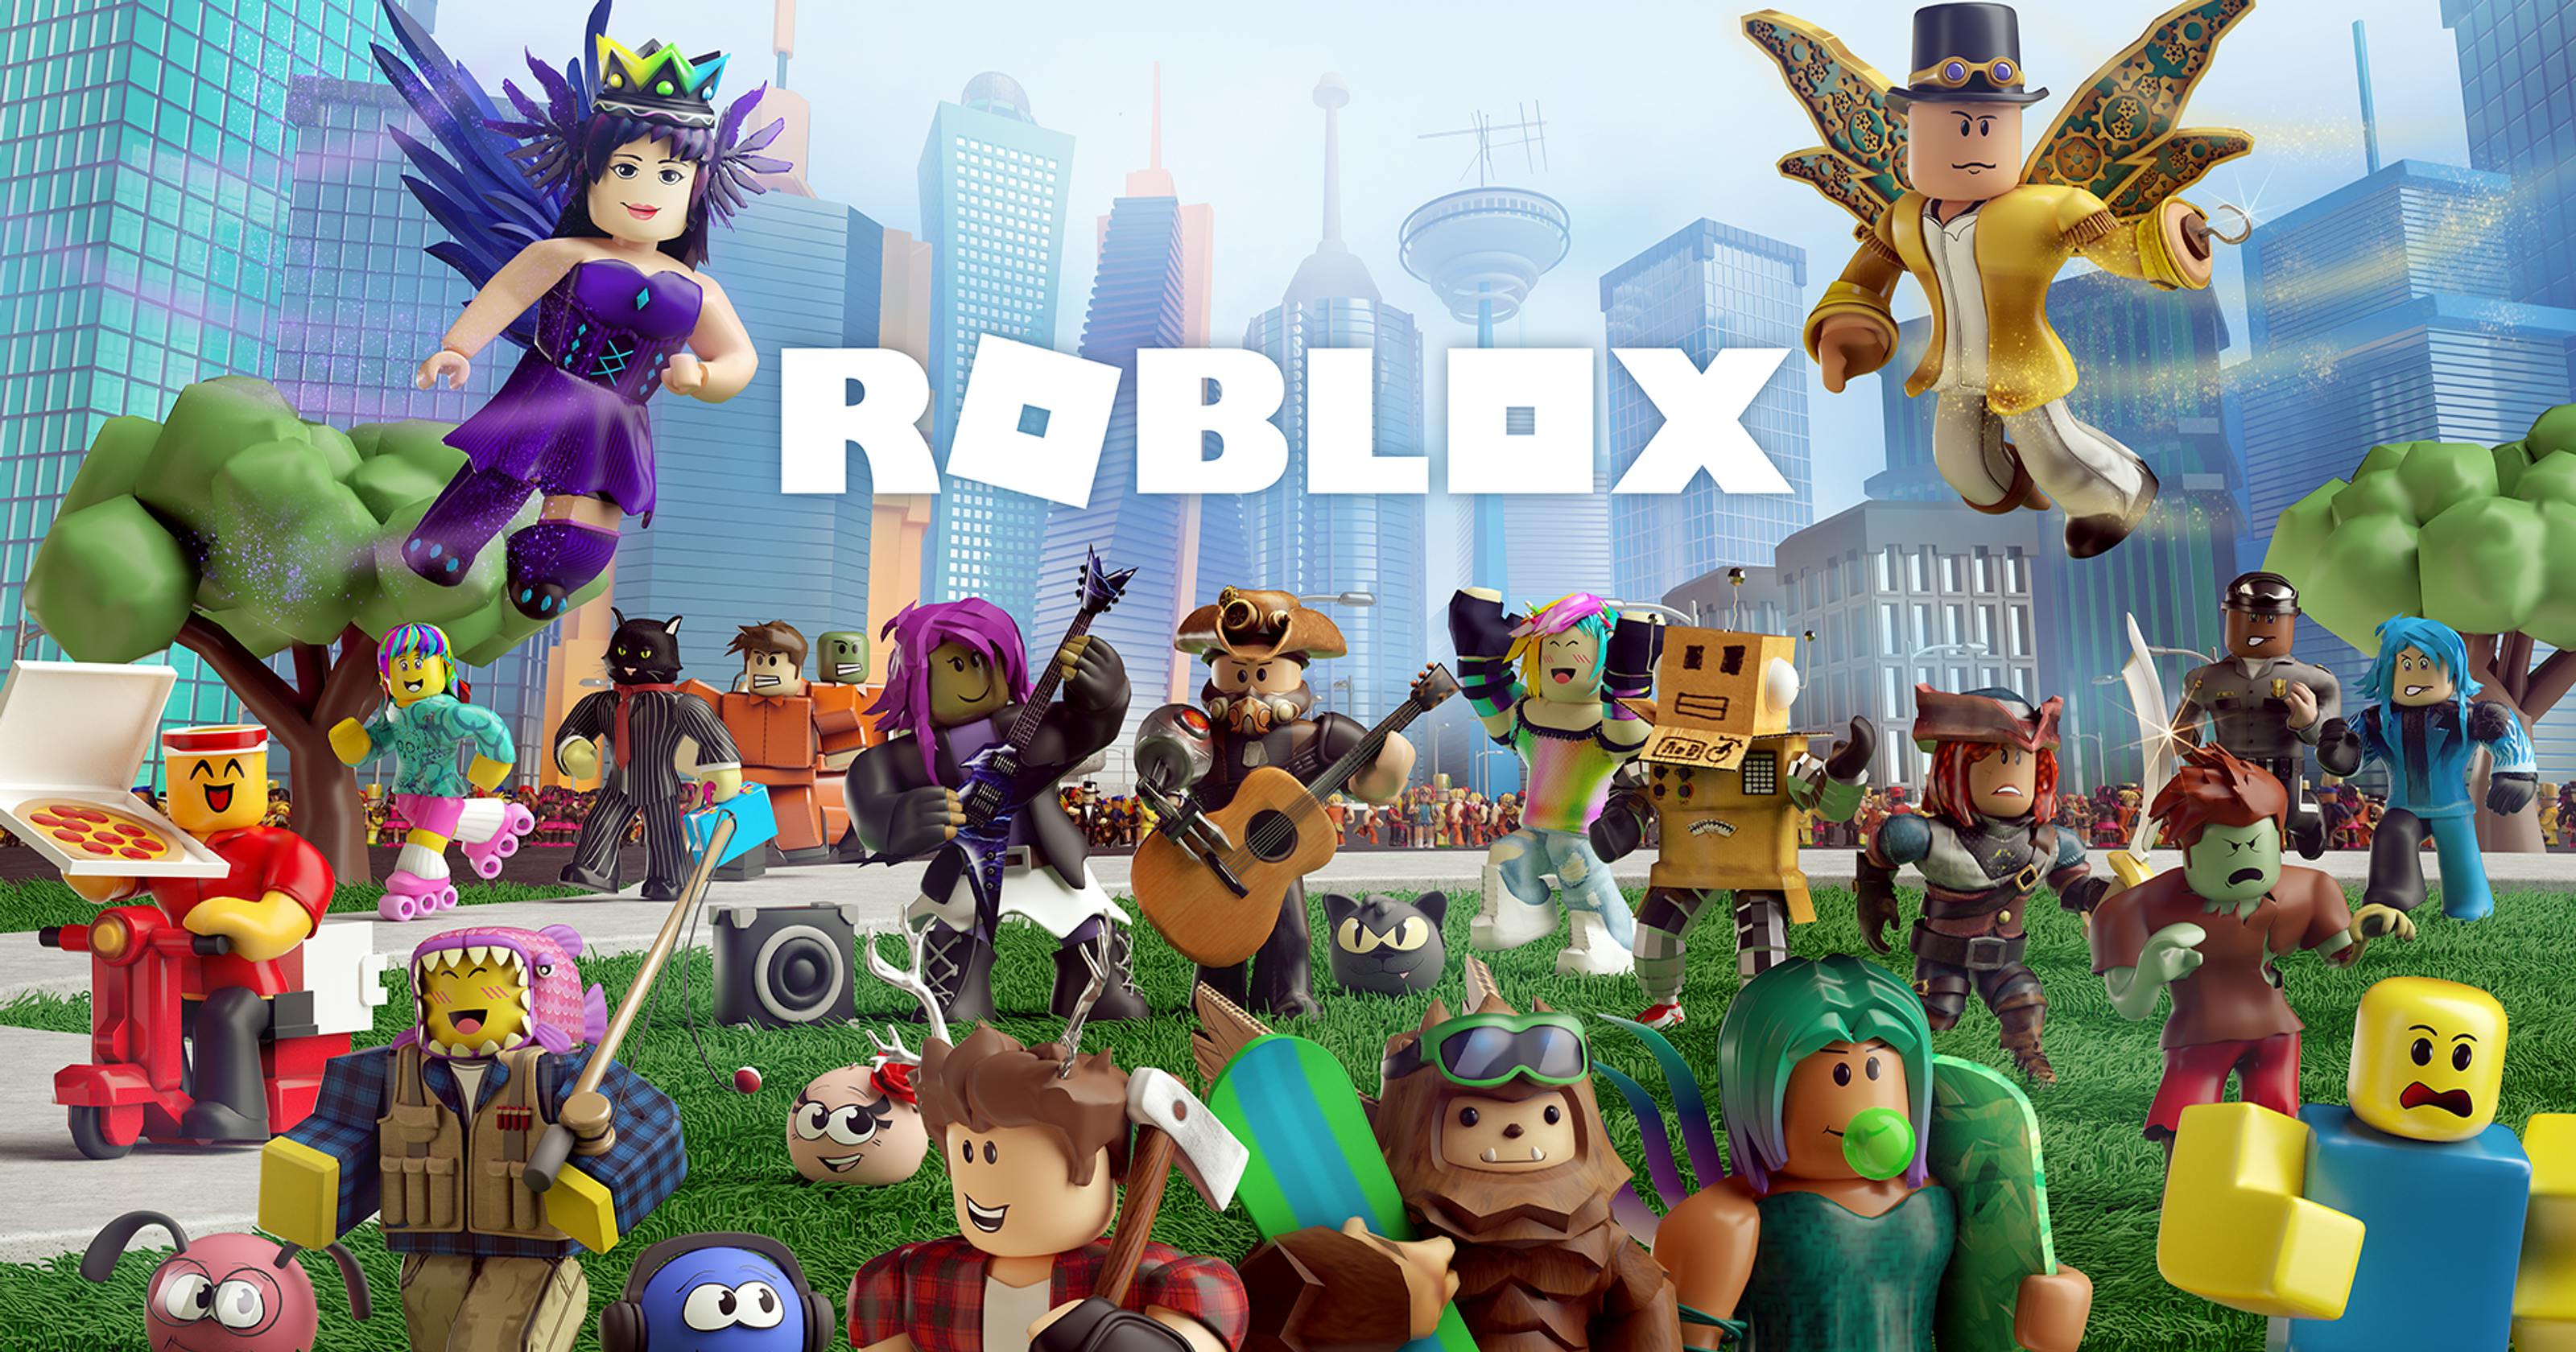 Advanced Roblox Game Coding Summer Camp 29 Jul 2019 - ken reg roblox